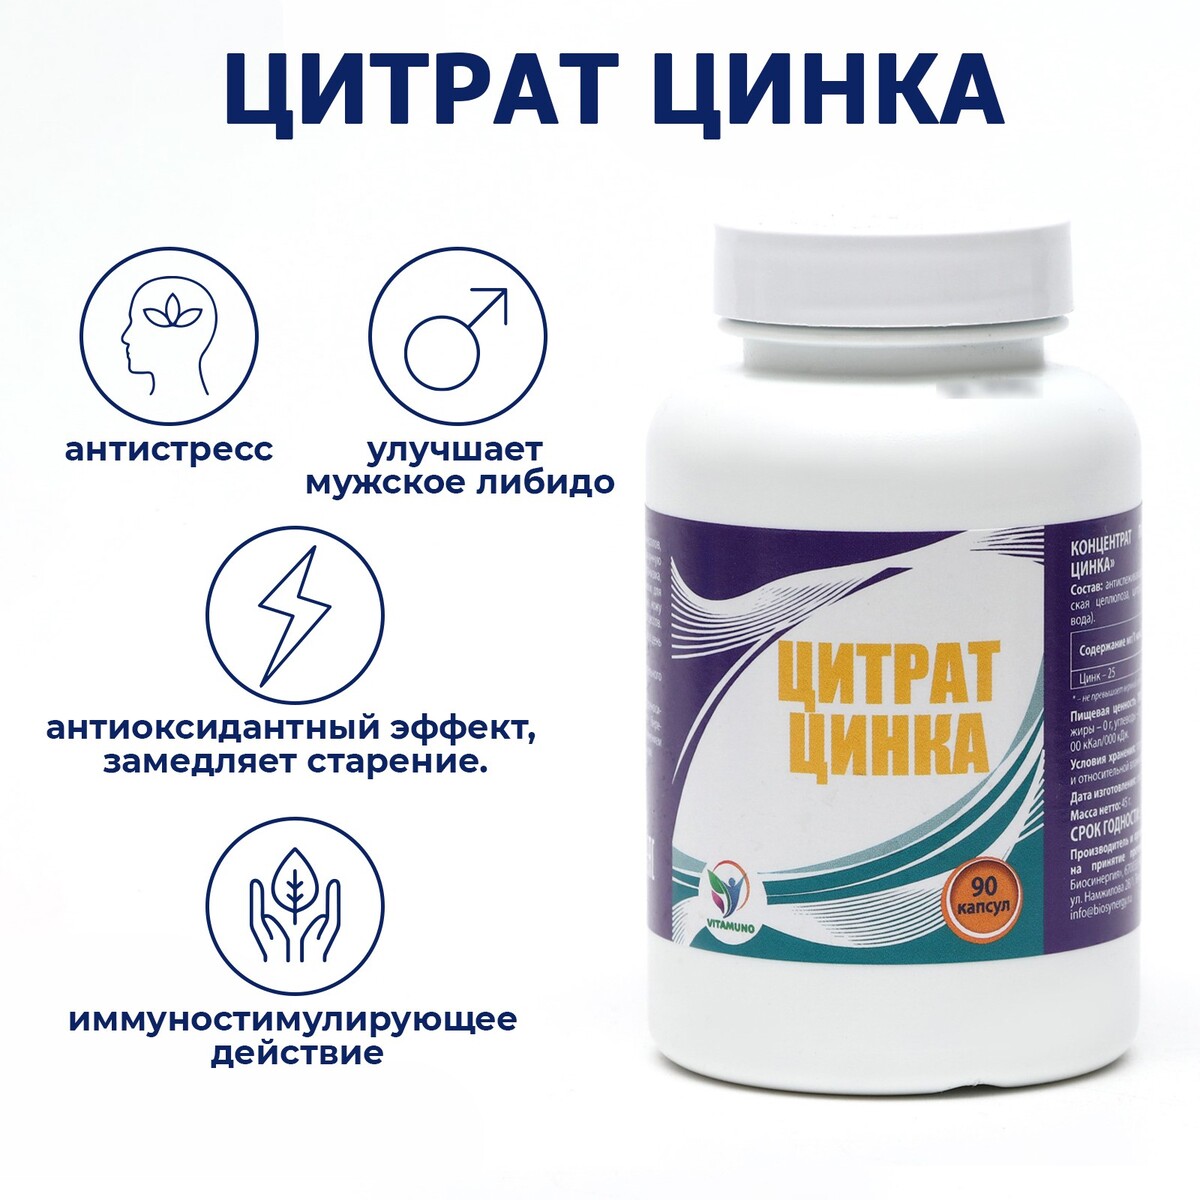 Цинка цитрат, для иммунитета, волос, кожи и ногтей, 90 капсул Vitamuno